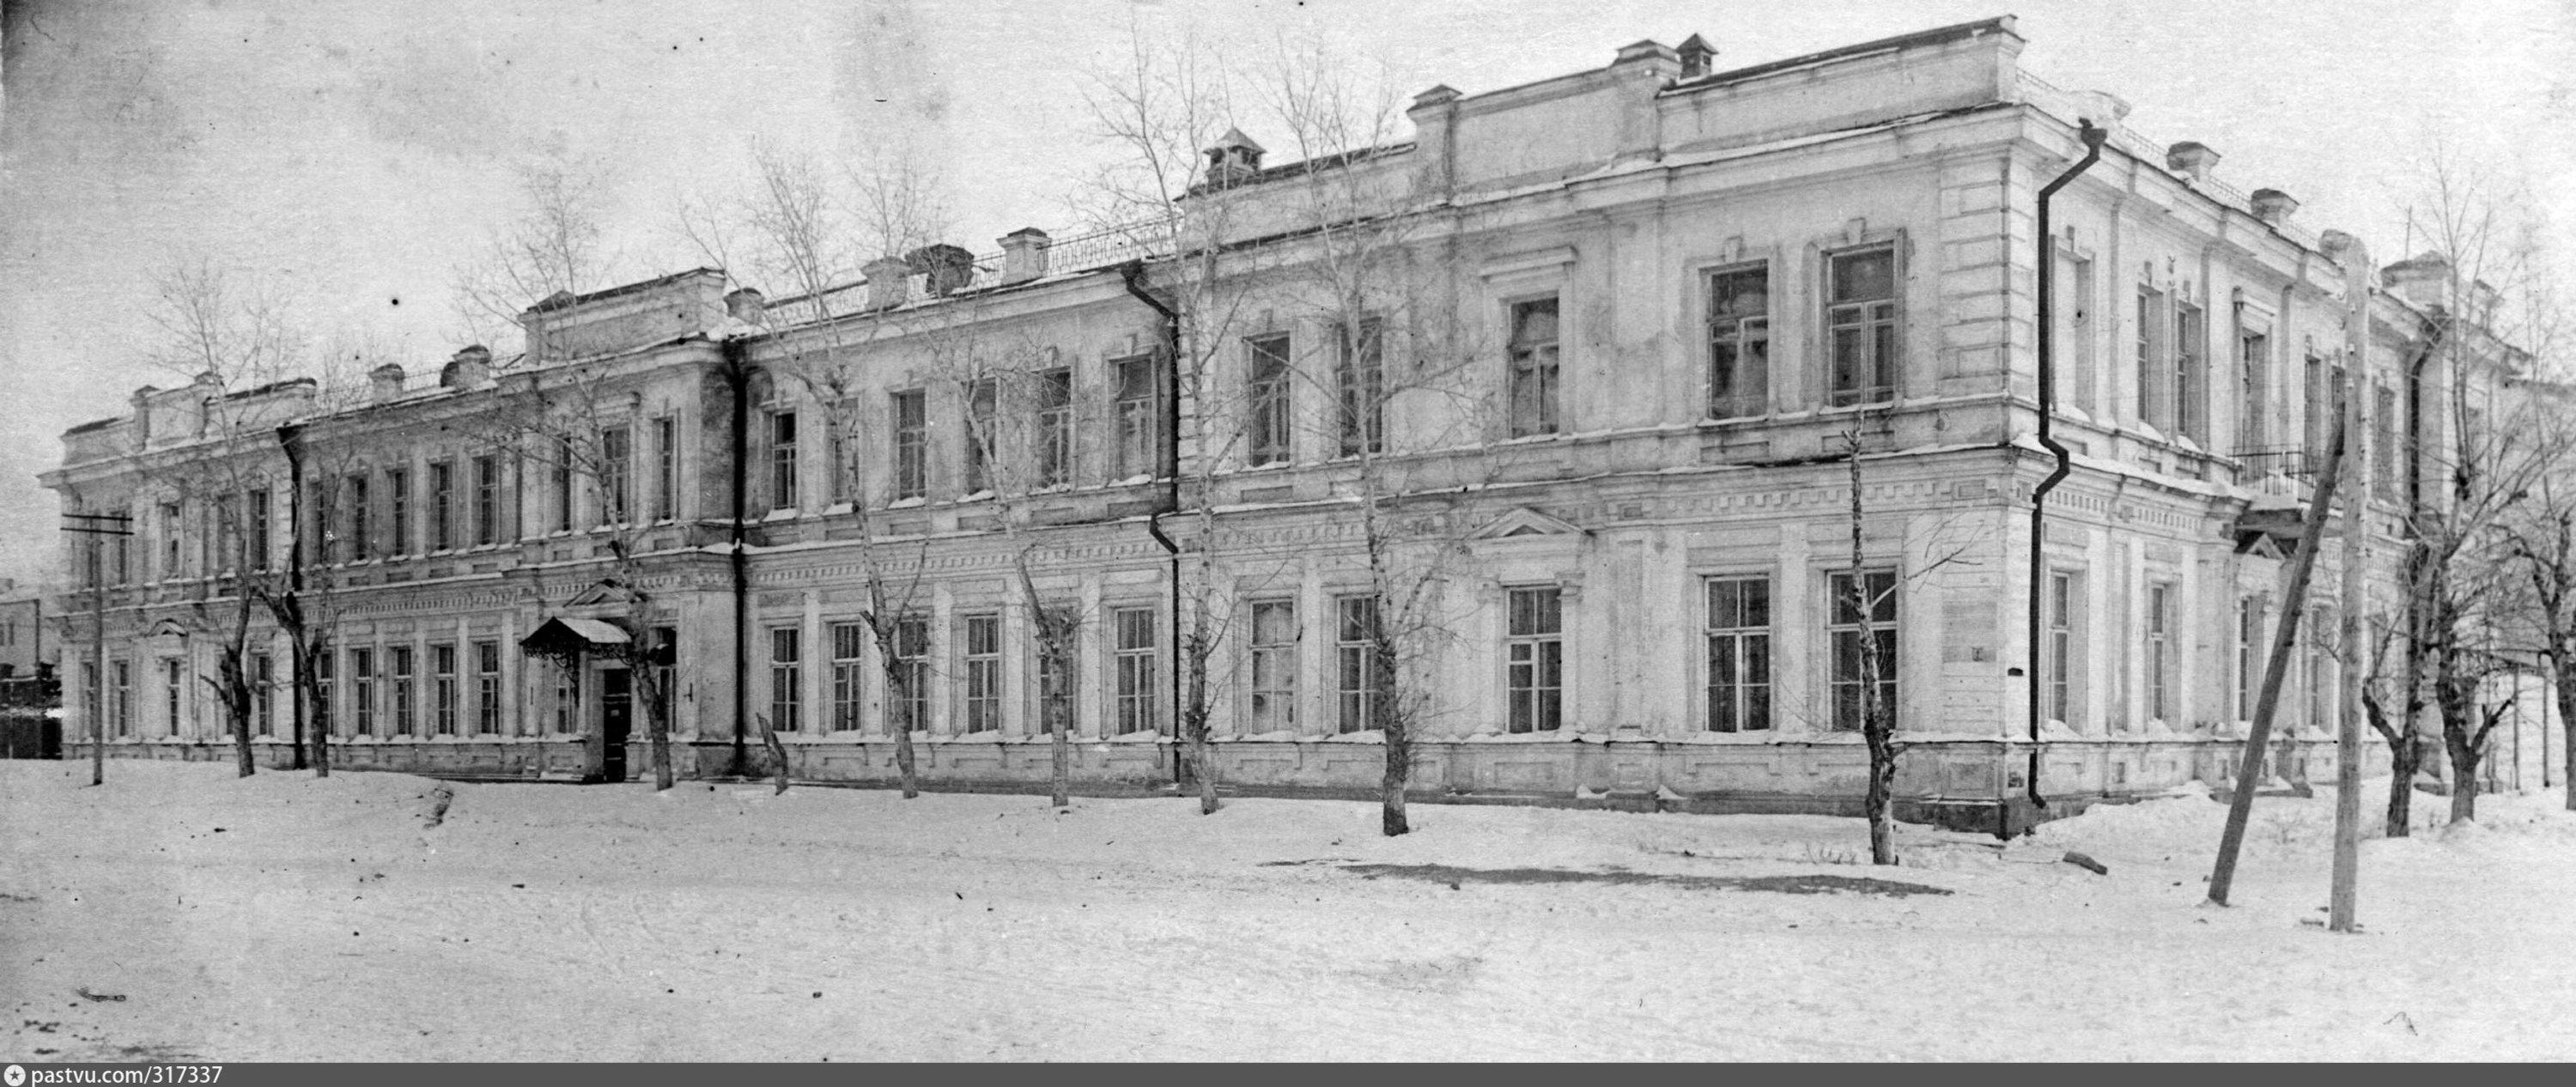 Здание педагогического института в 1930-е годы